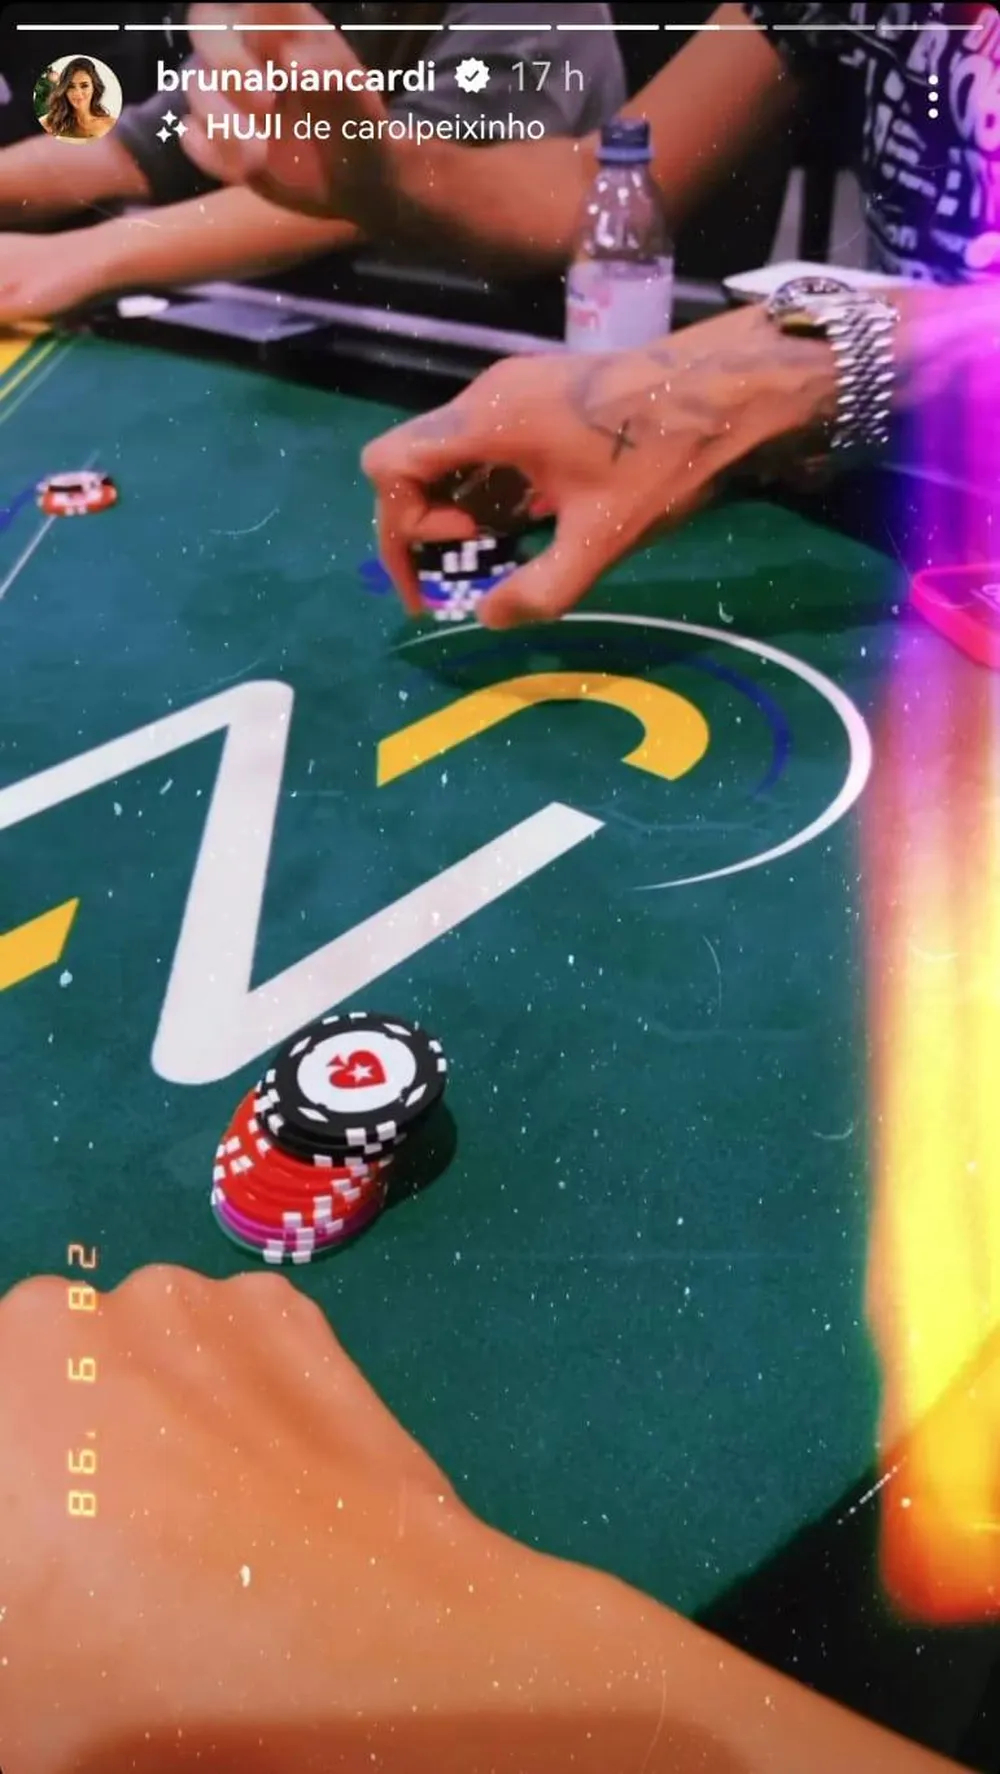 Mão de Neymar Jr. aparece em vídeo. Na imagem, ele distribui fichas de pôquer. É ossível ver as tatuagens do craque em cima da mesa de jogo